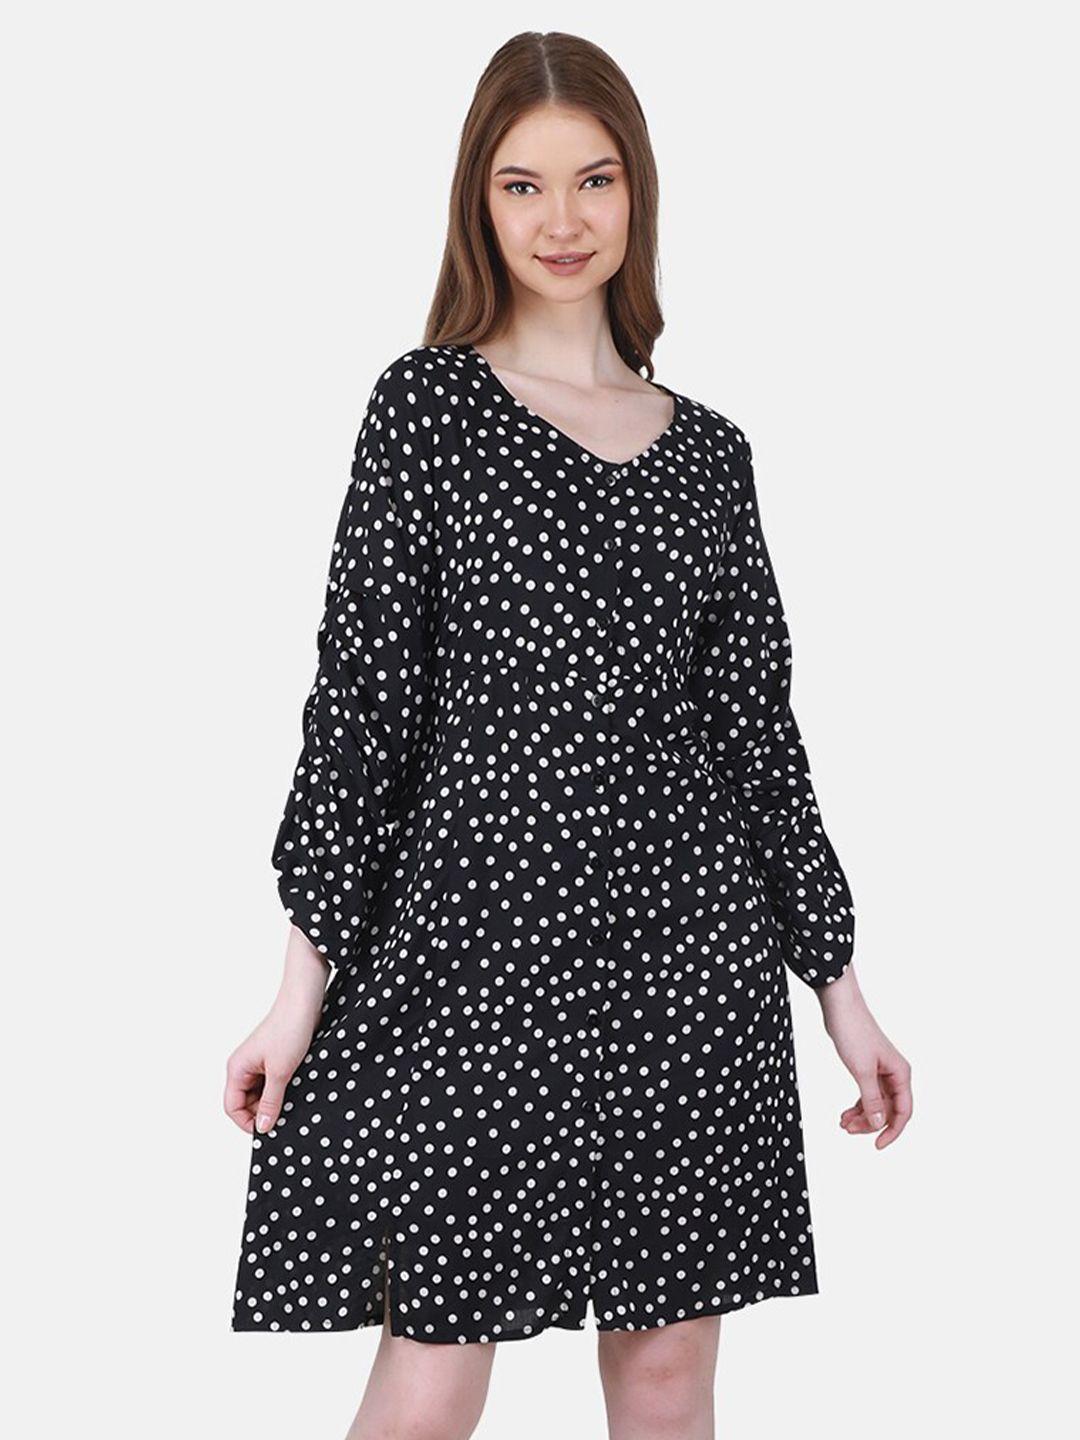 duke-polka-dots-printed-puffed-sleeves-a-line-mini-dress